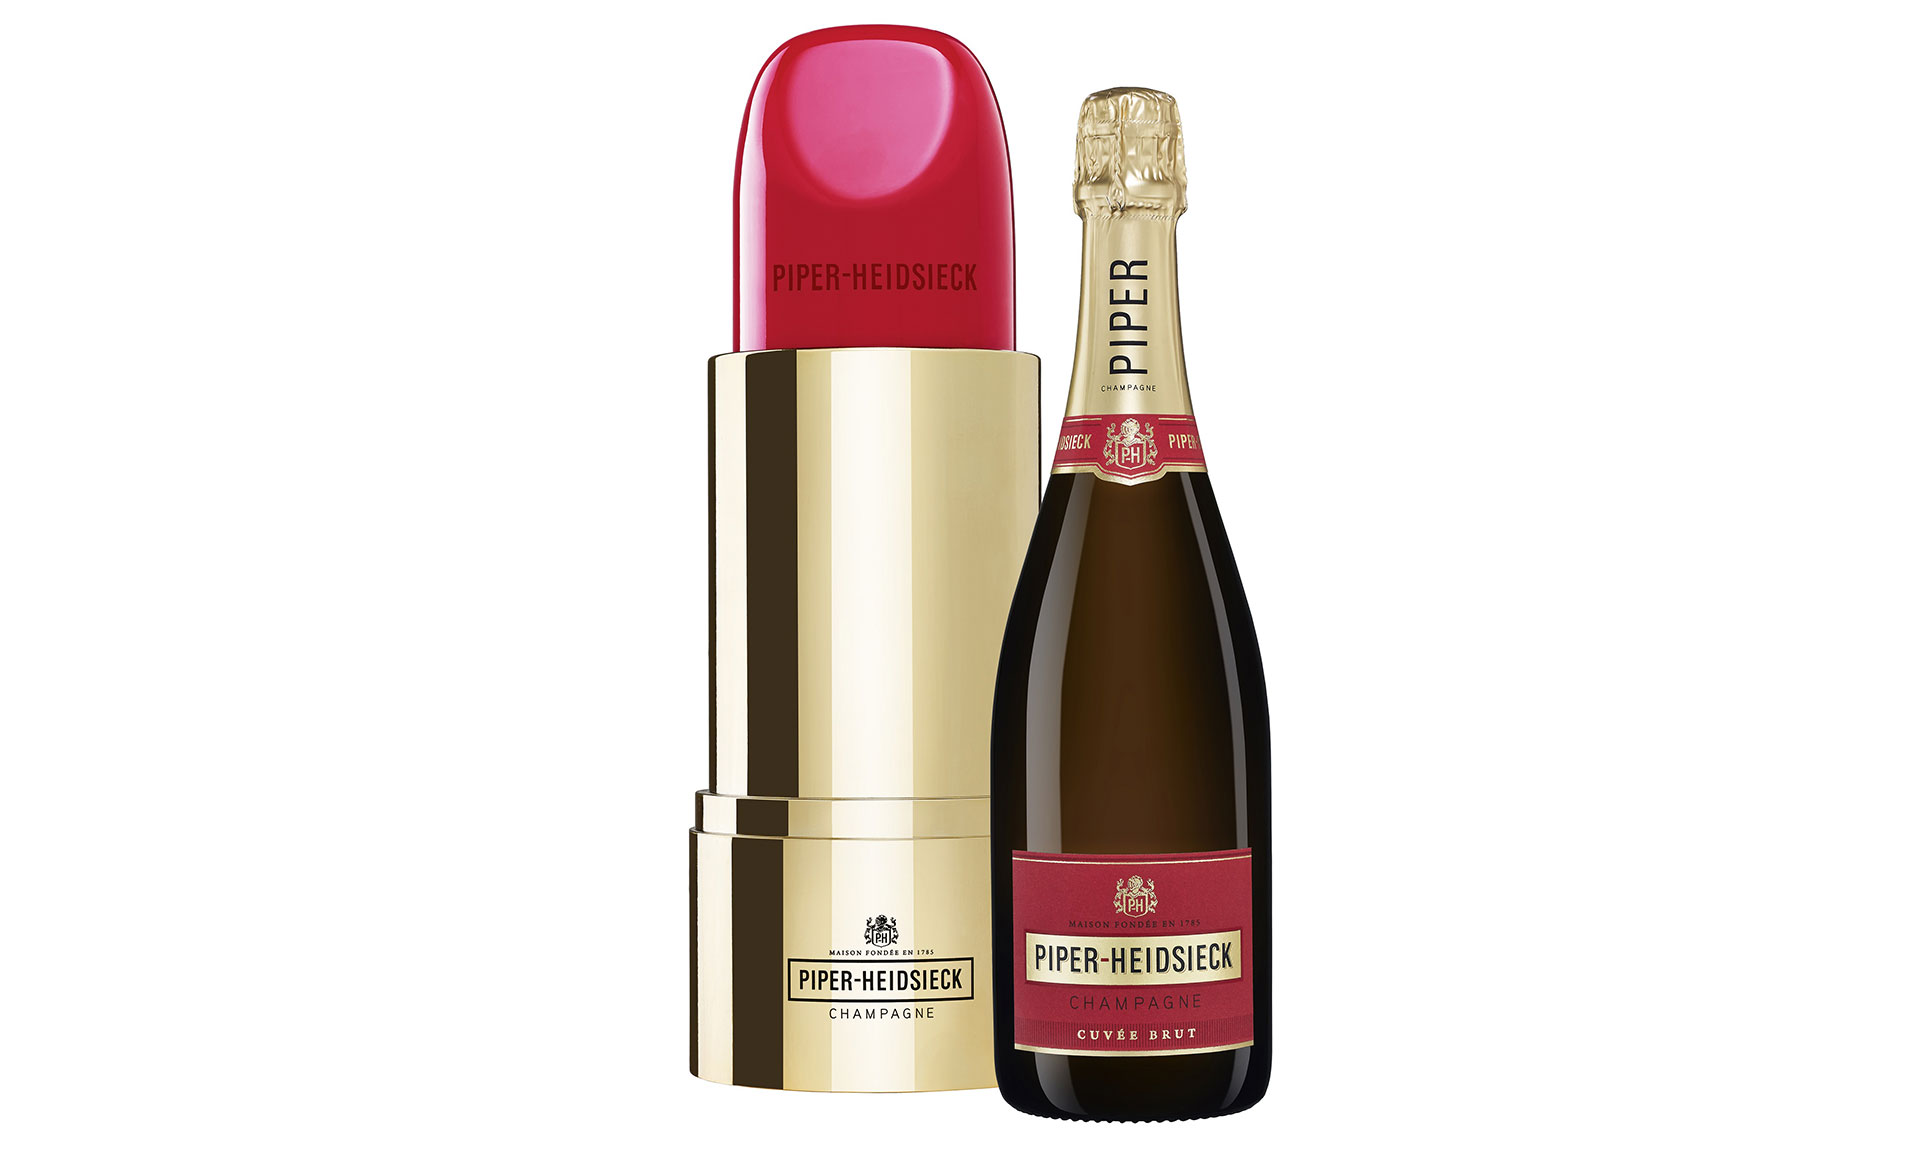 Šampaňské Piper-Heidsieck přichází s limitovanou edici Lipstick